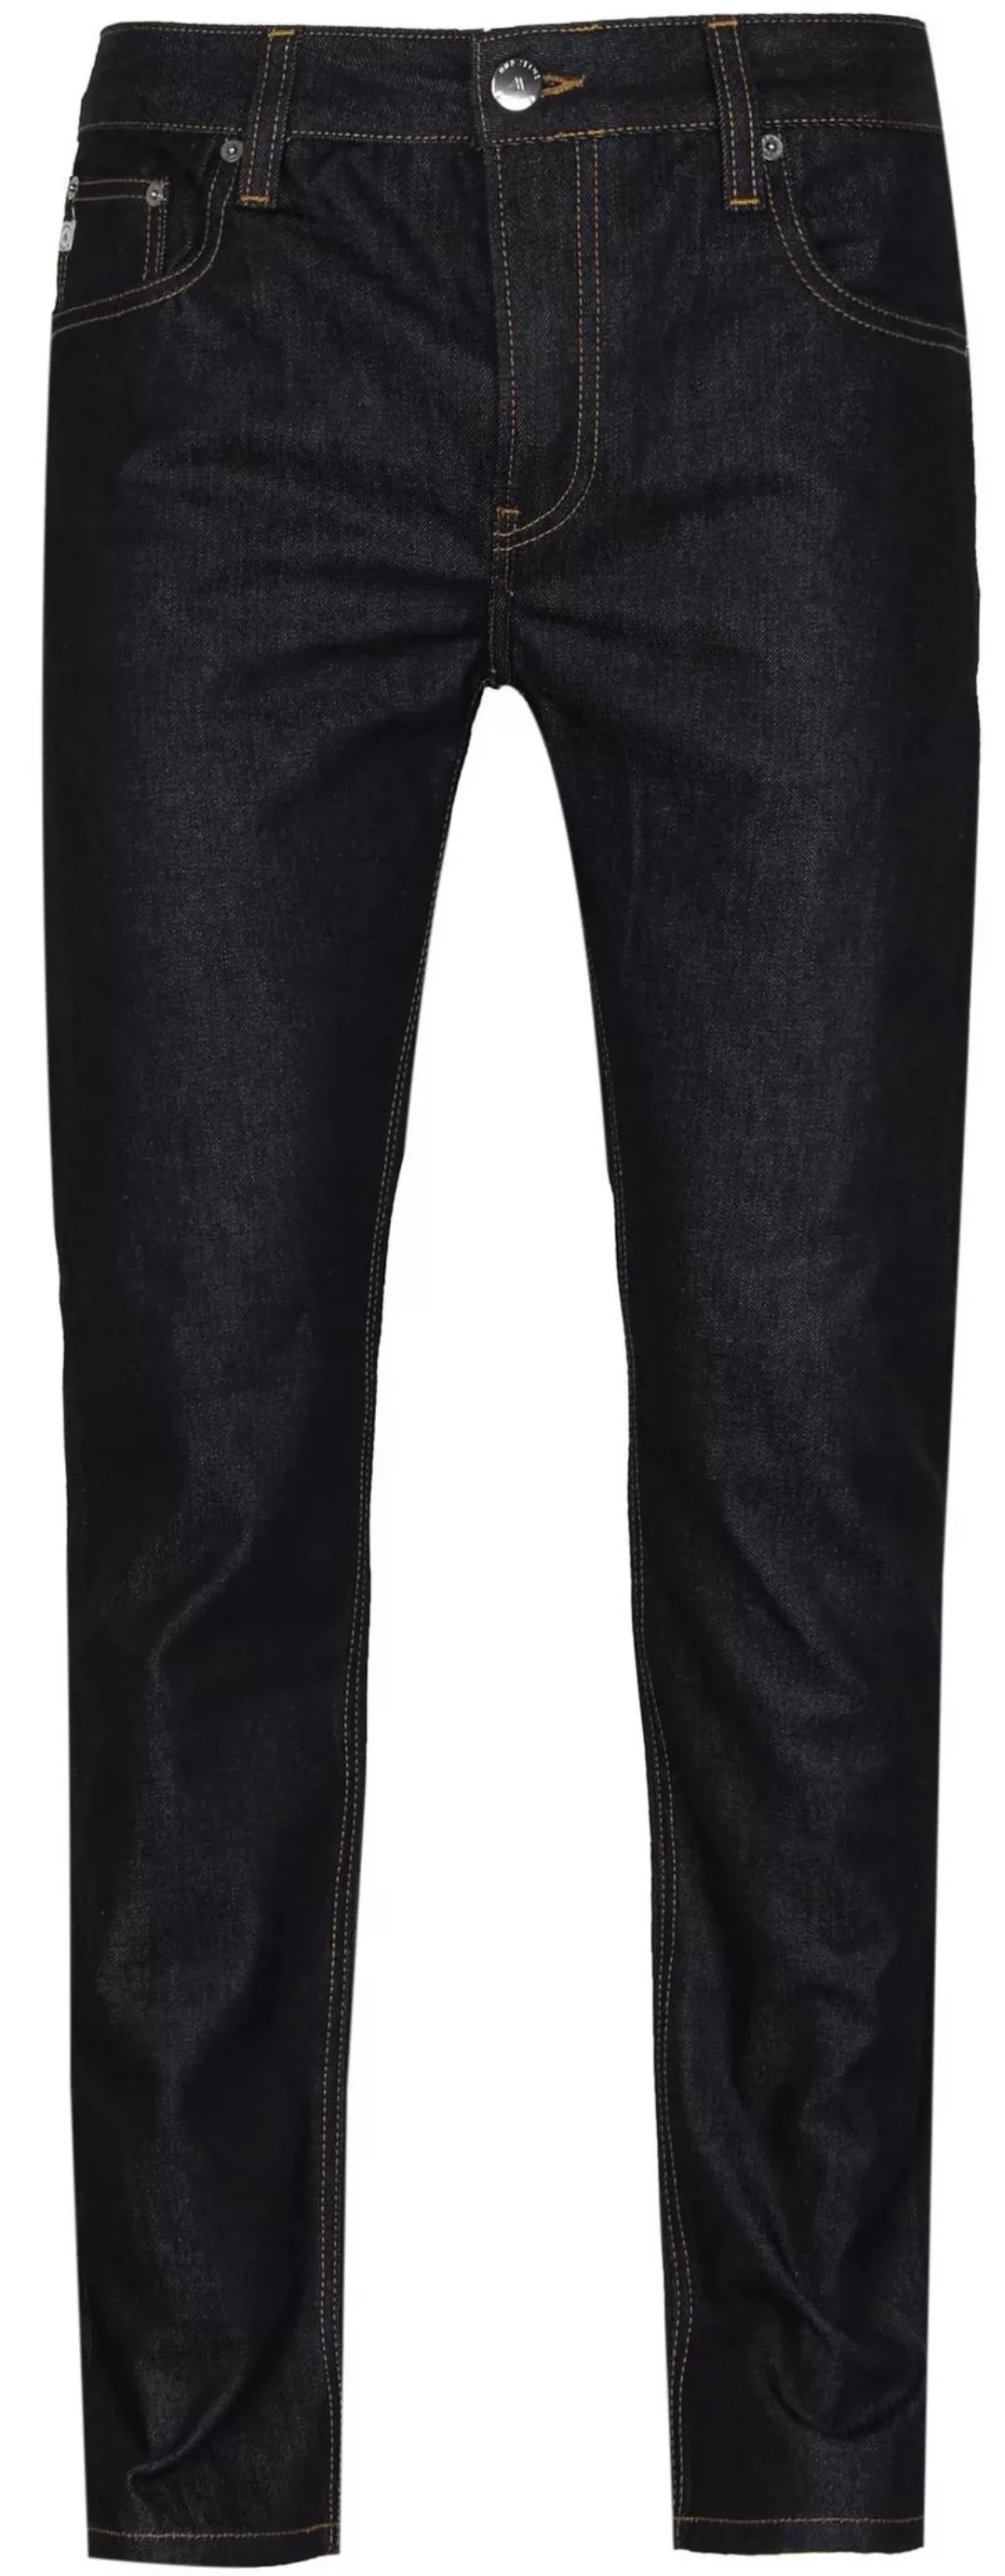 MUD Jeans Denim Regular Bryce Indigo Dunkelbau - Größe W 33 - L 36 günstig online kaufen